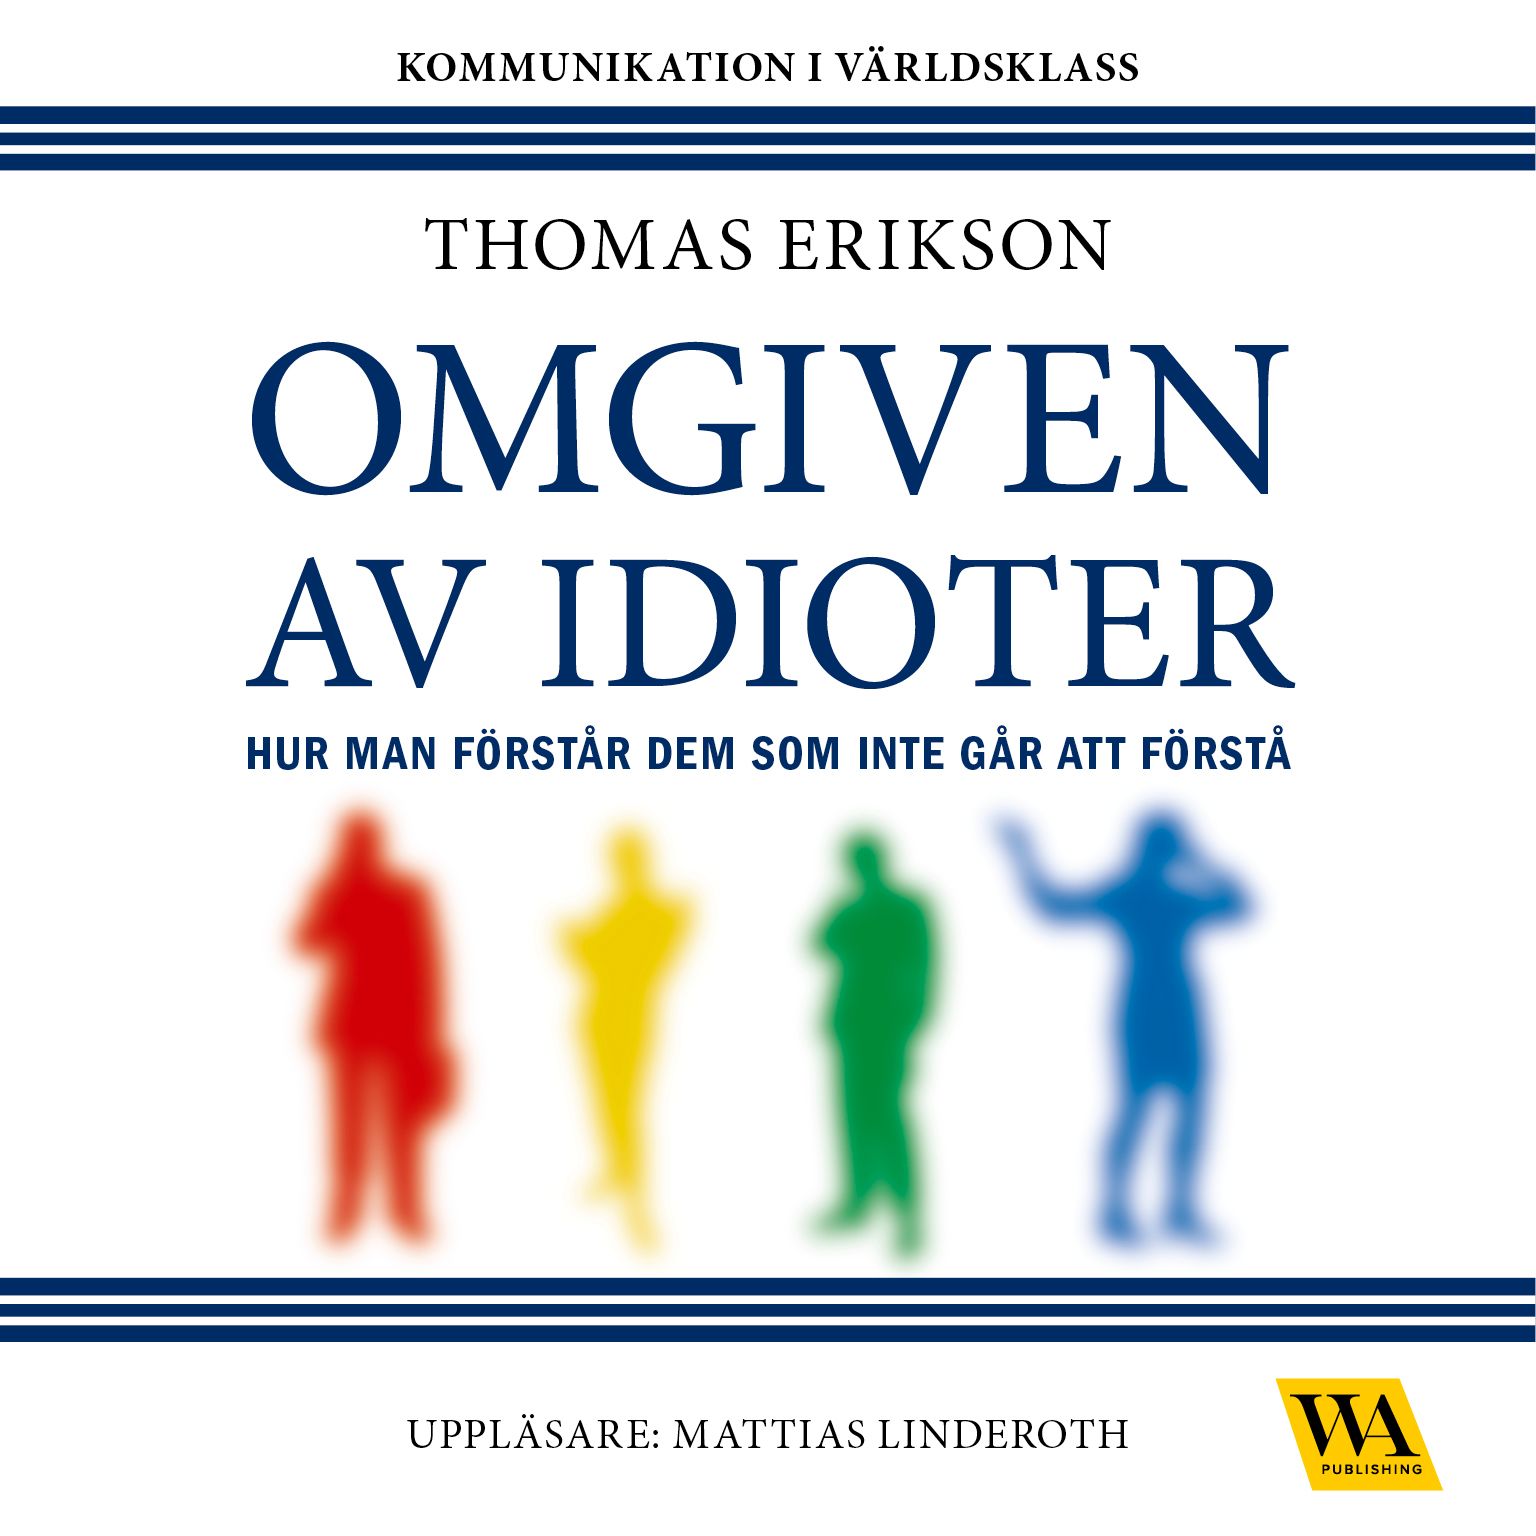 Omgiven av idioter, ljudbok av Thomas Erikson